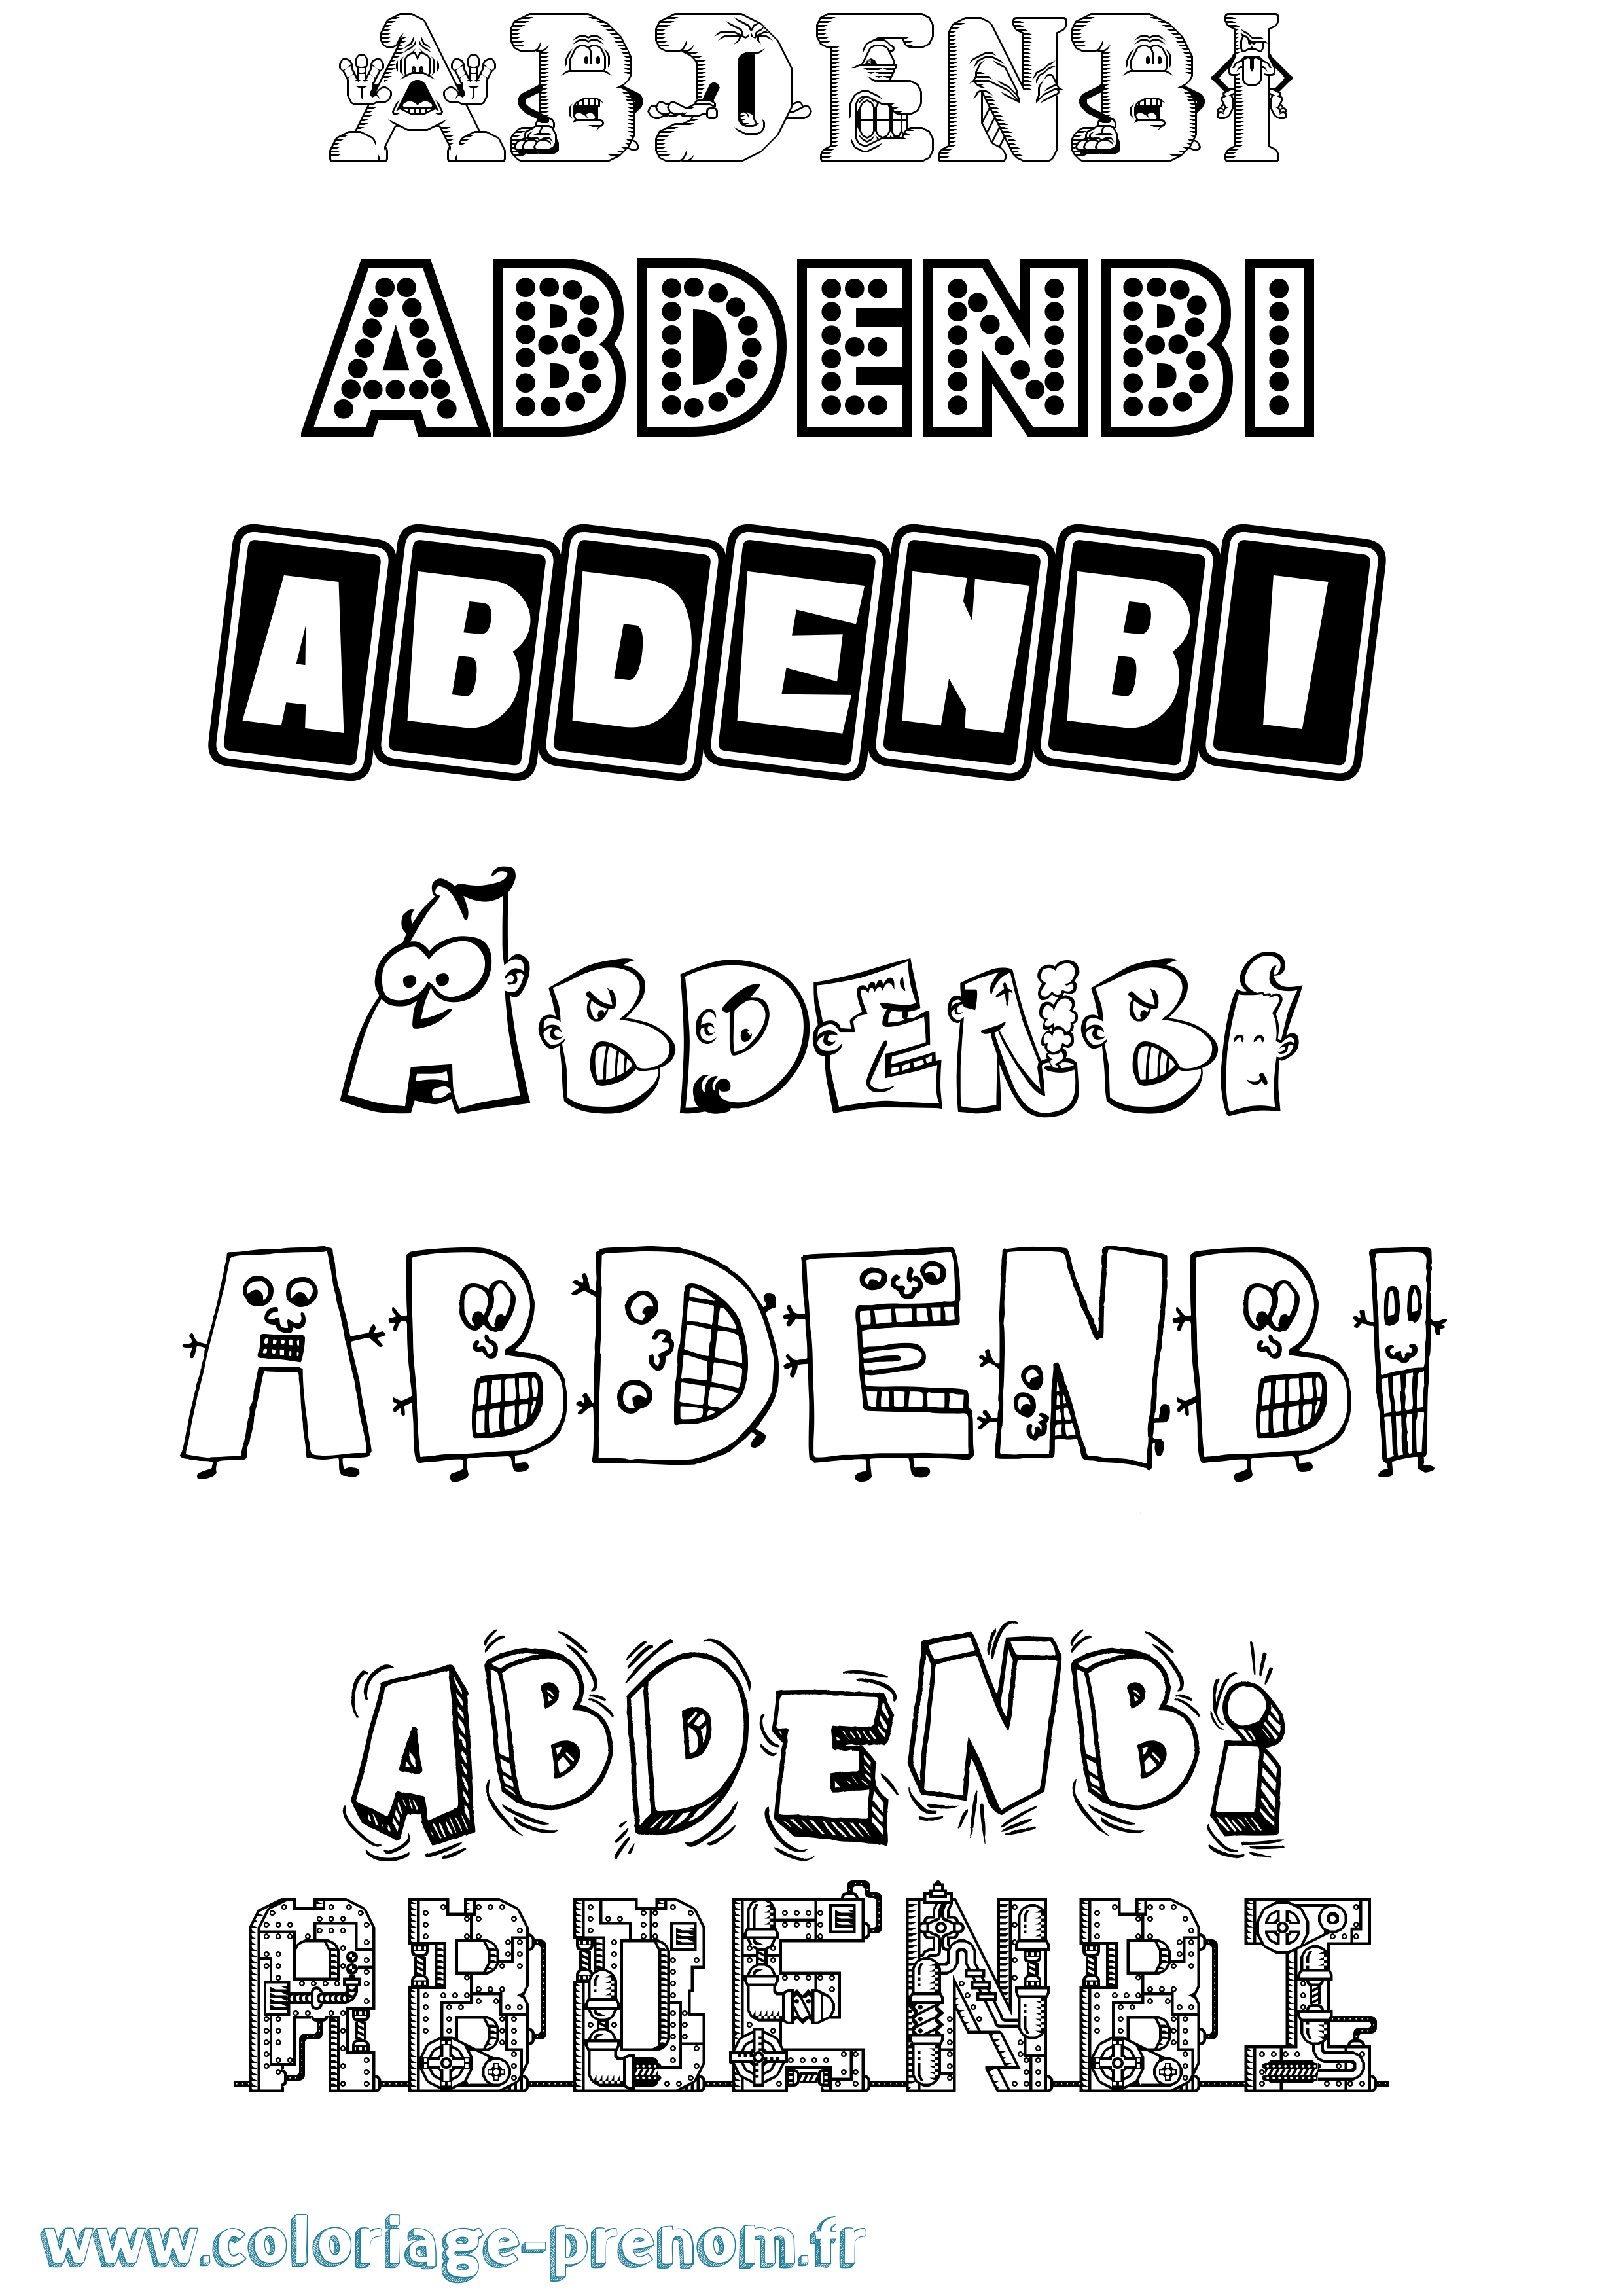 Coloriage prénom Abdenbi Fun